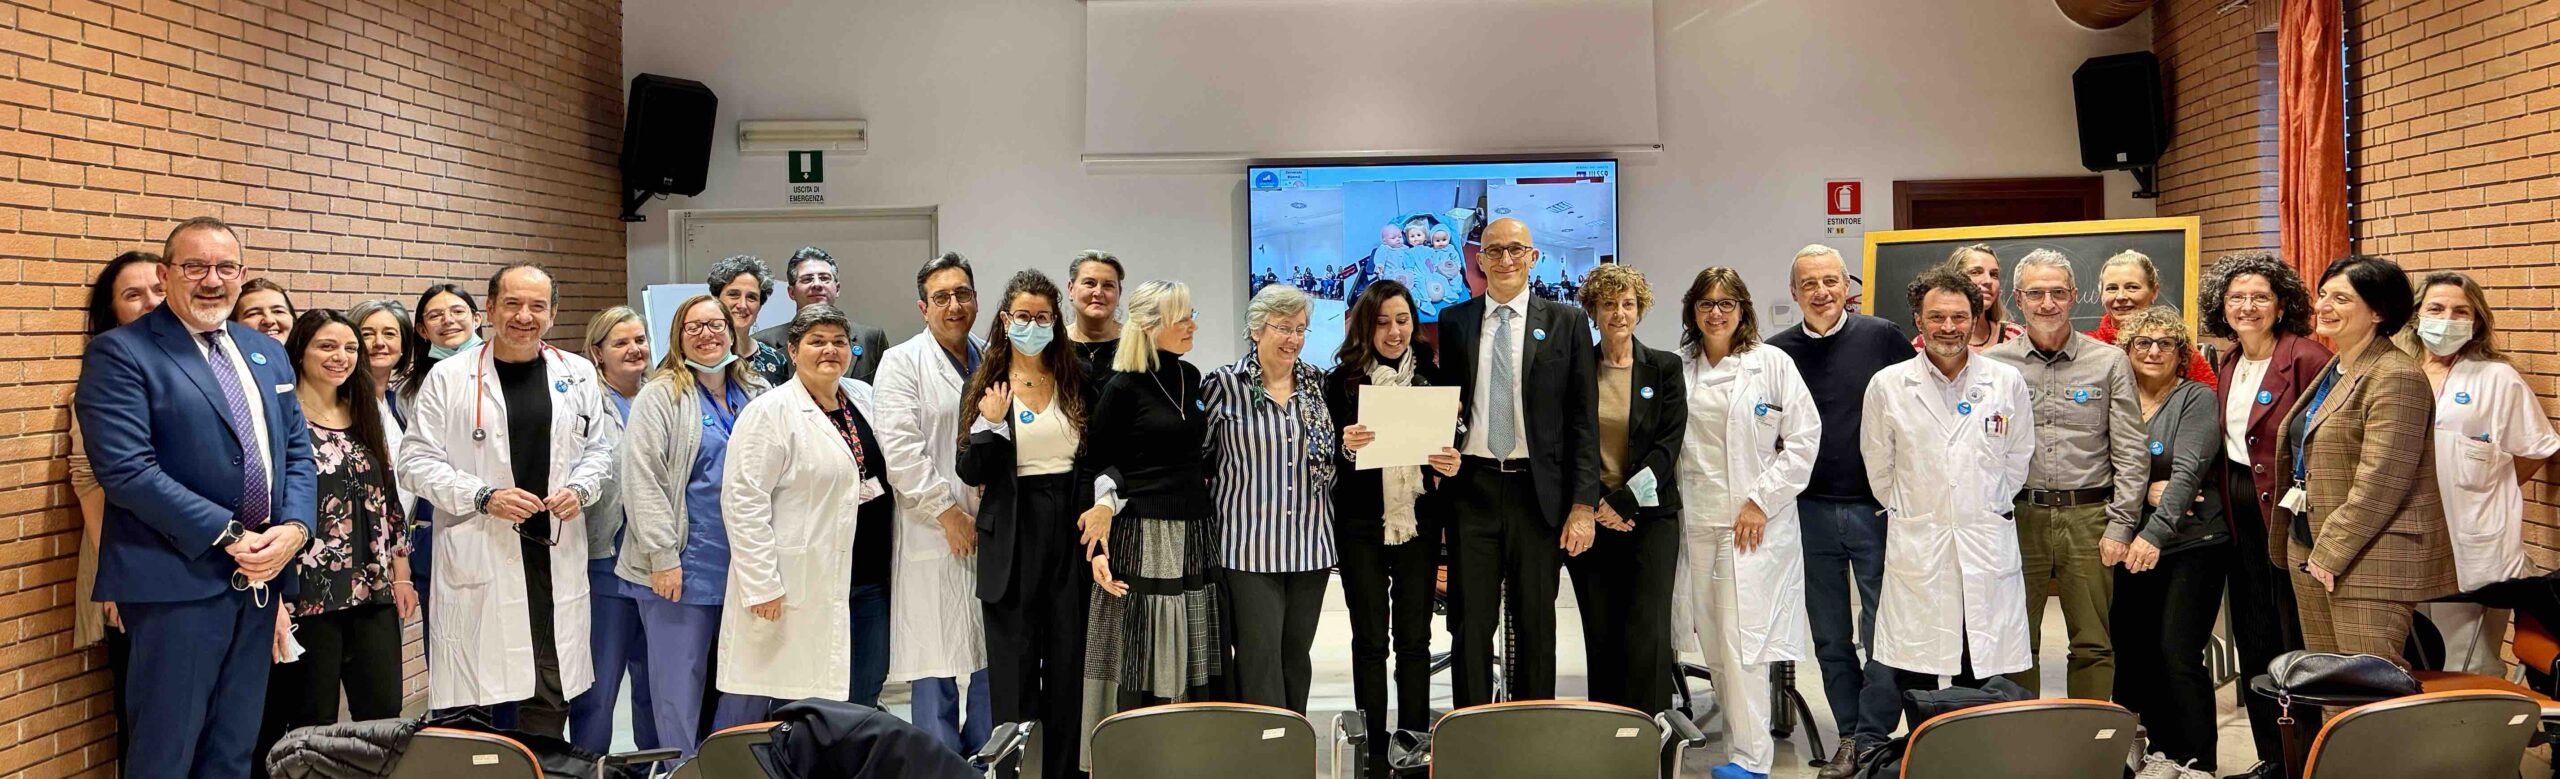 Riconoscimento Unicef agli ospedali di Legnago e Villafranca “amici delle bambine e dei bambini”